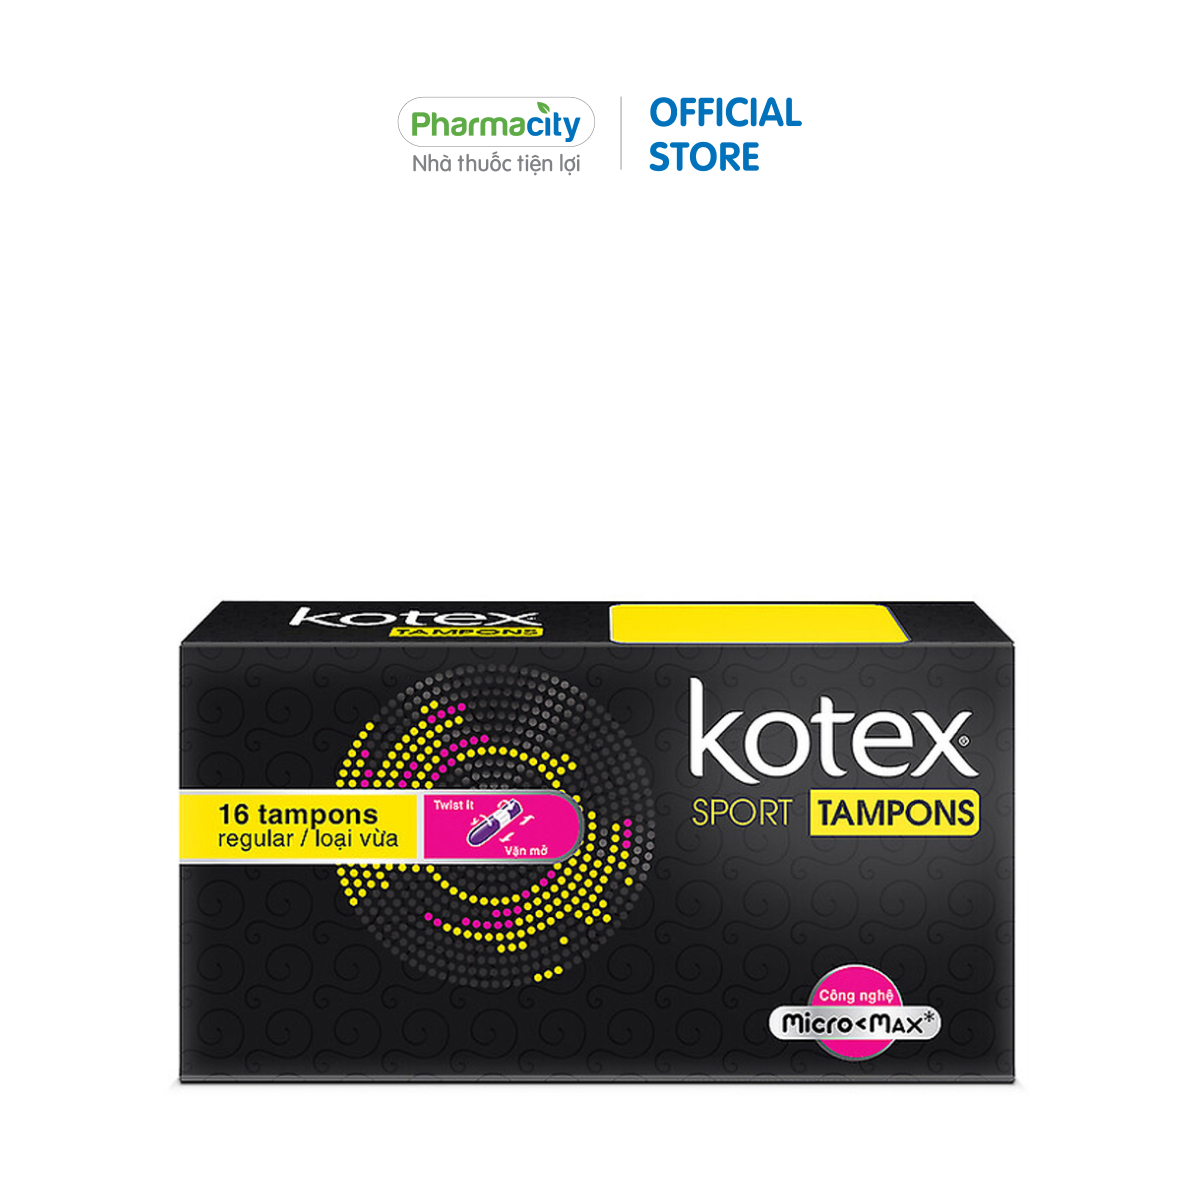 Băng vệ sinh Kotex Sport Tampons (Hộp 16 cái) - Loại vừa